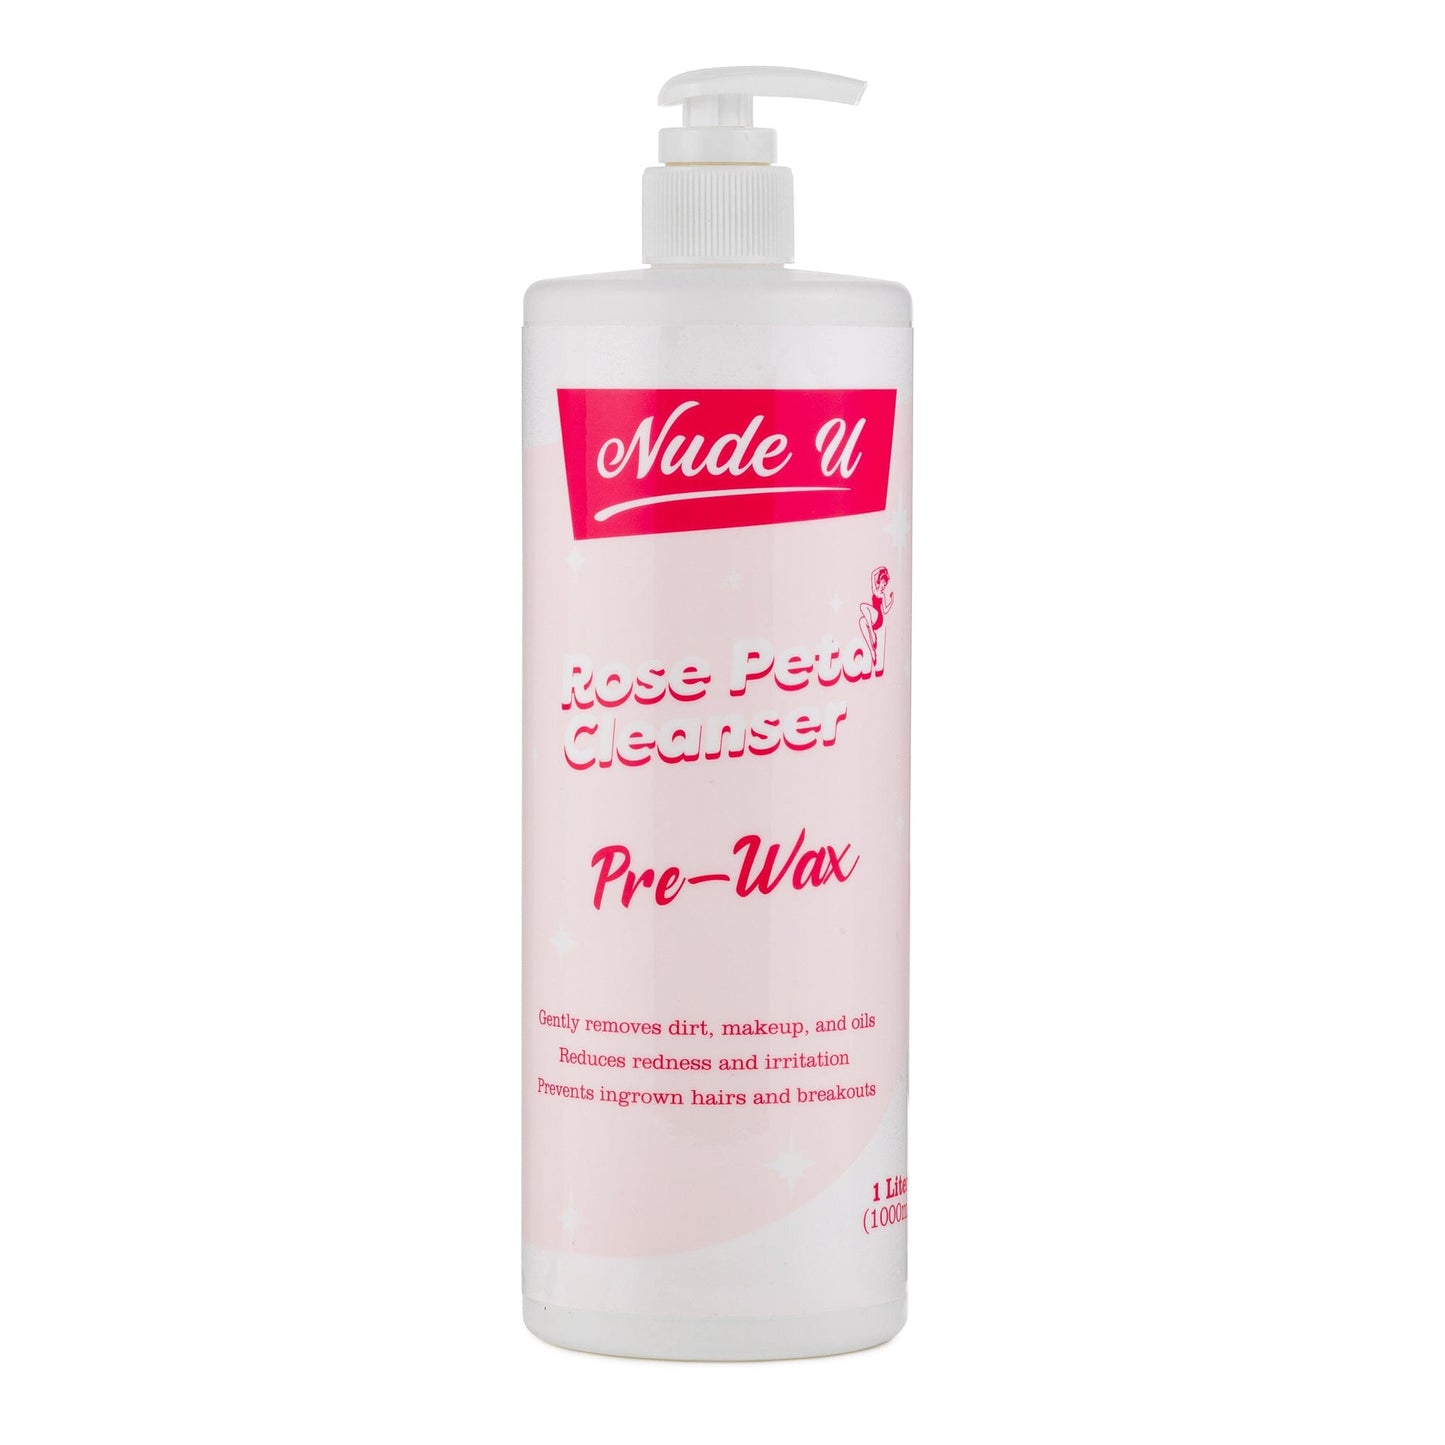 Rose Petal Cleanser | Post-Wax | 8.45 fl.oz. | NUDE U WAXING KITS & SUPPLIES NUDE U 33.8 fl.oz. 